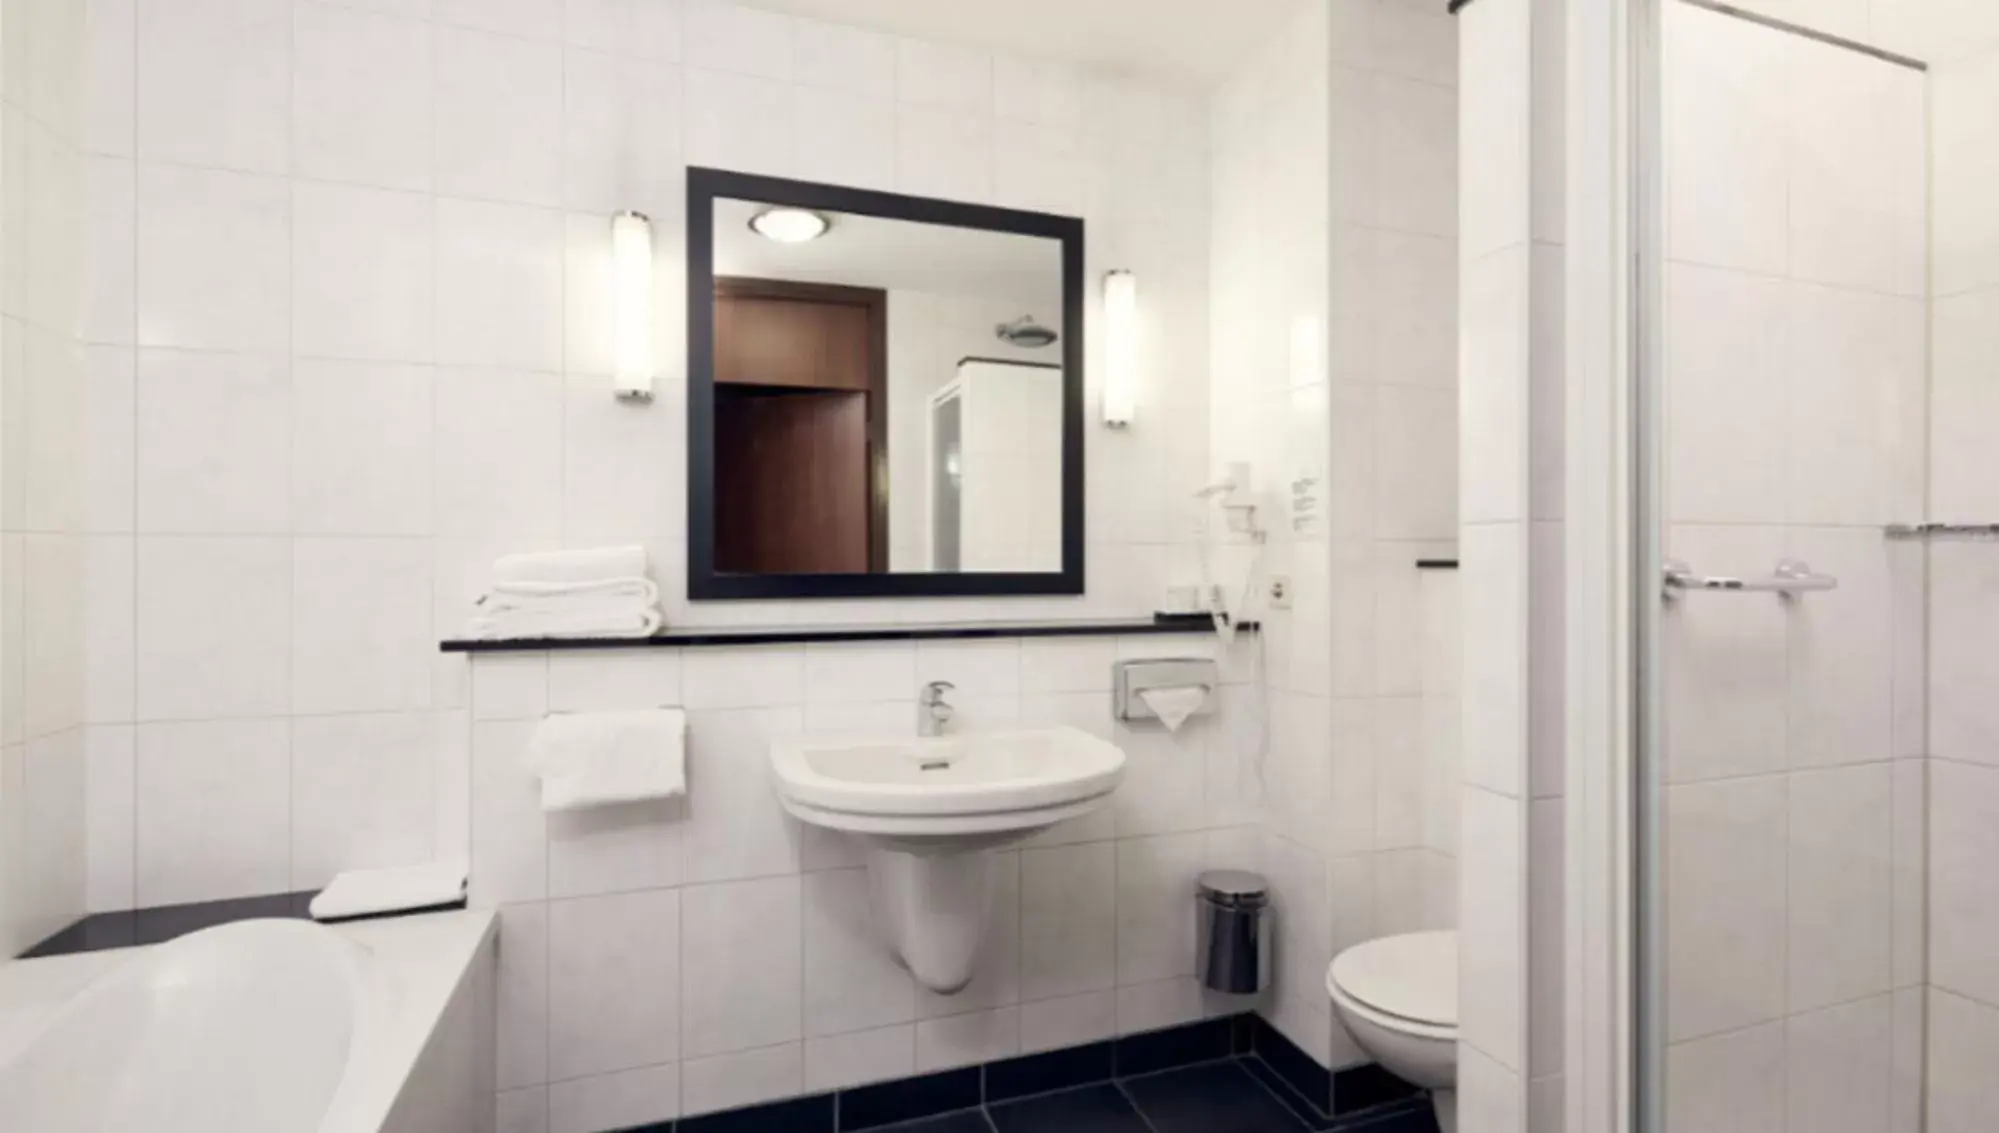 Bathroom in Van der Valk Hotel Eindhoven